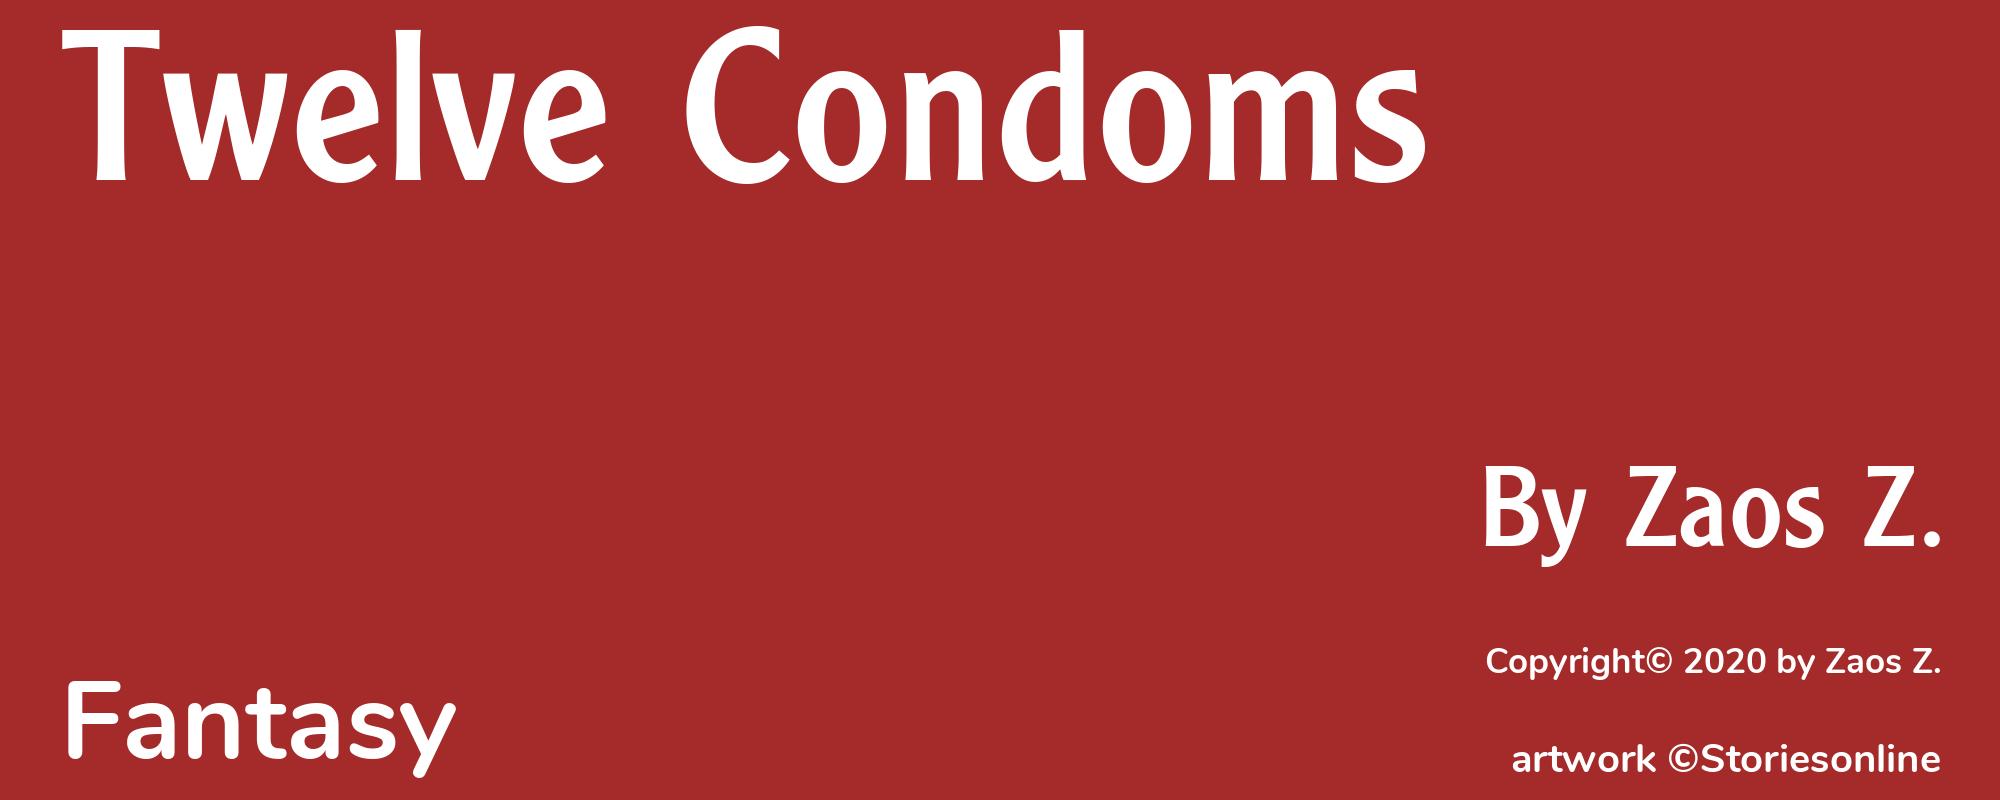 Twelve Condoms - Cover